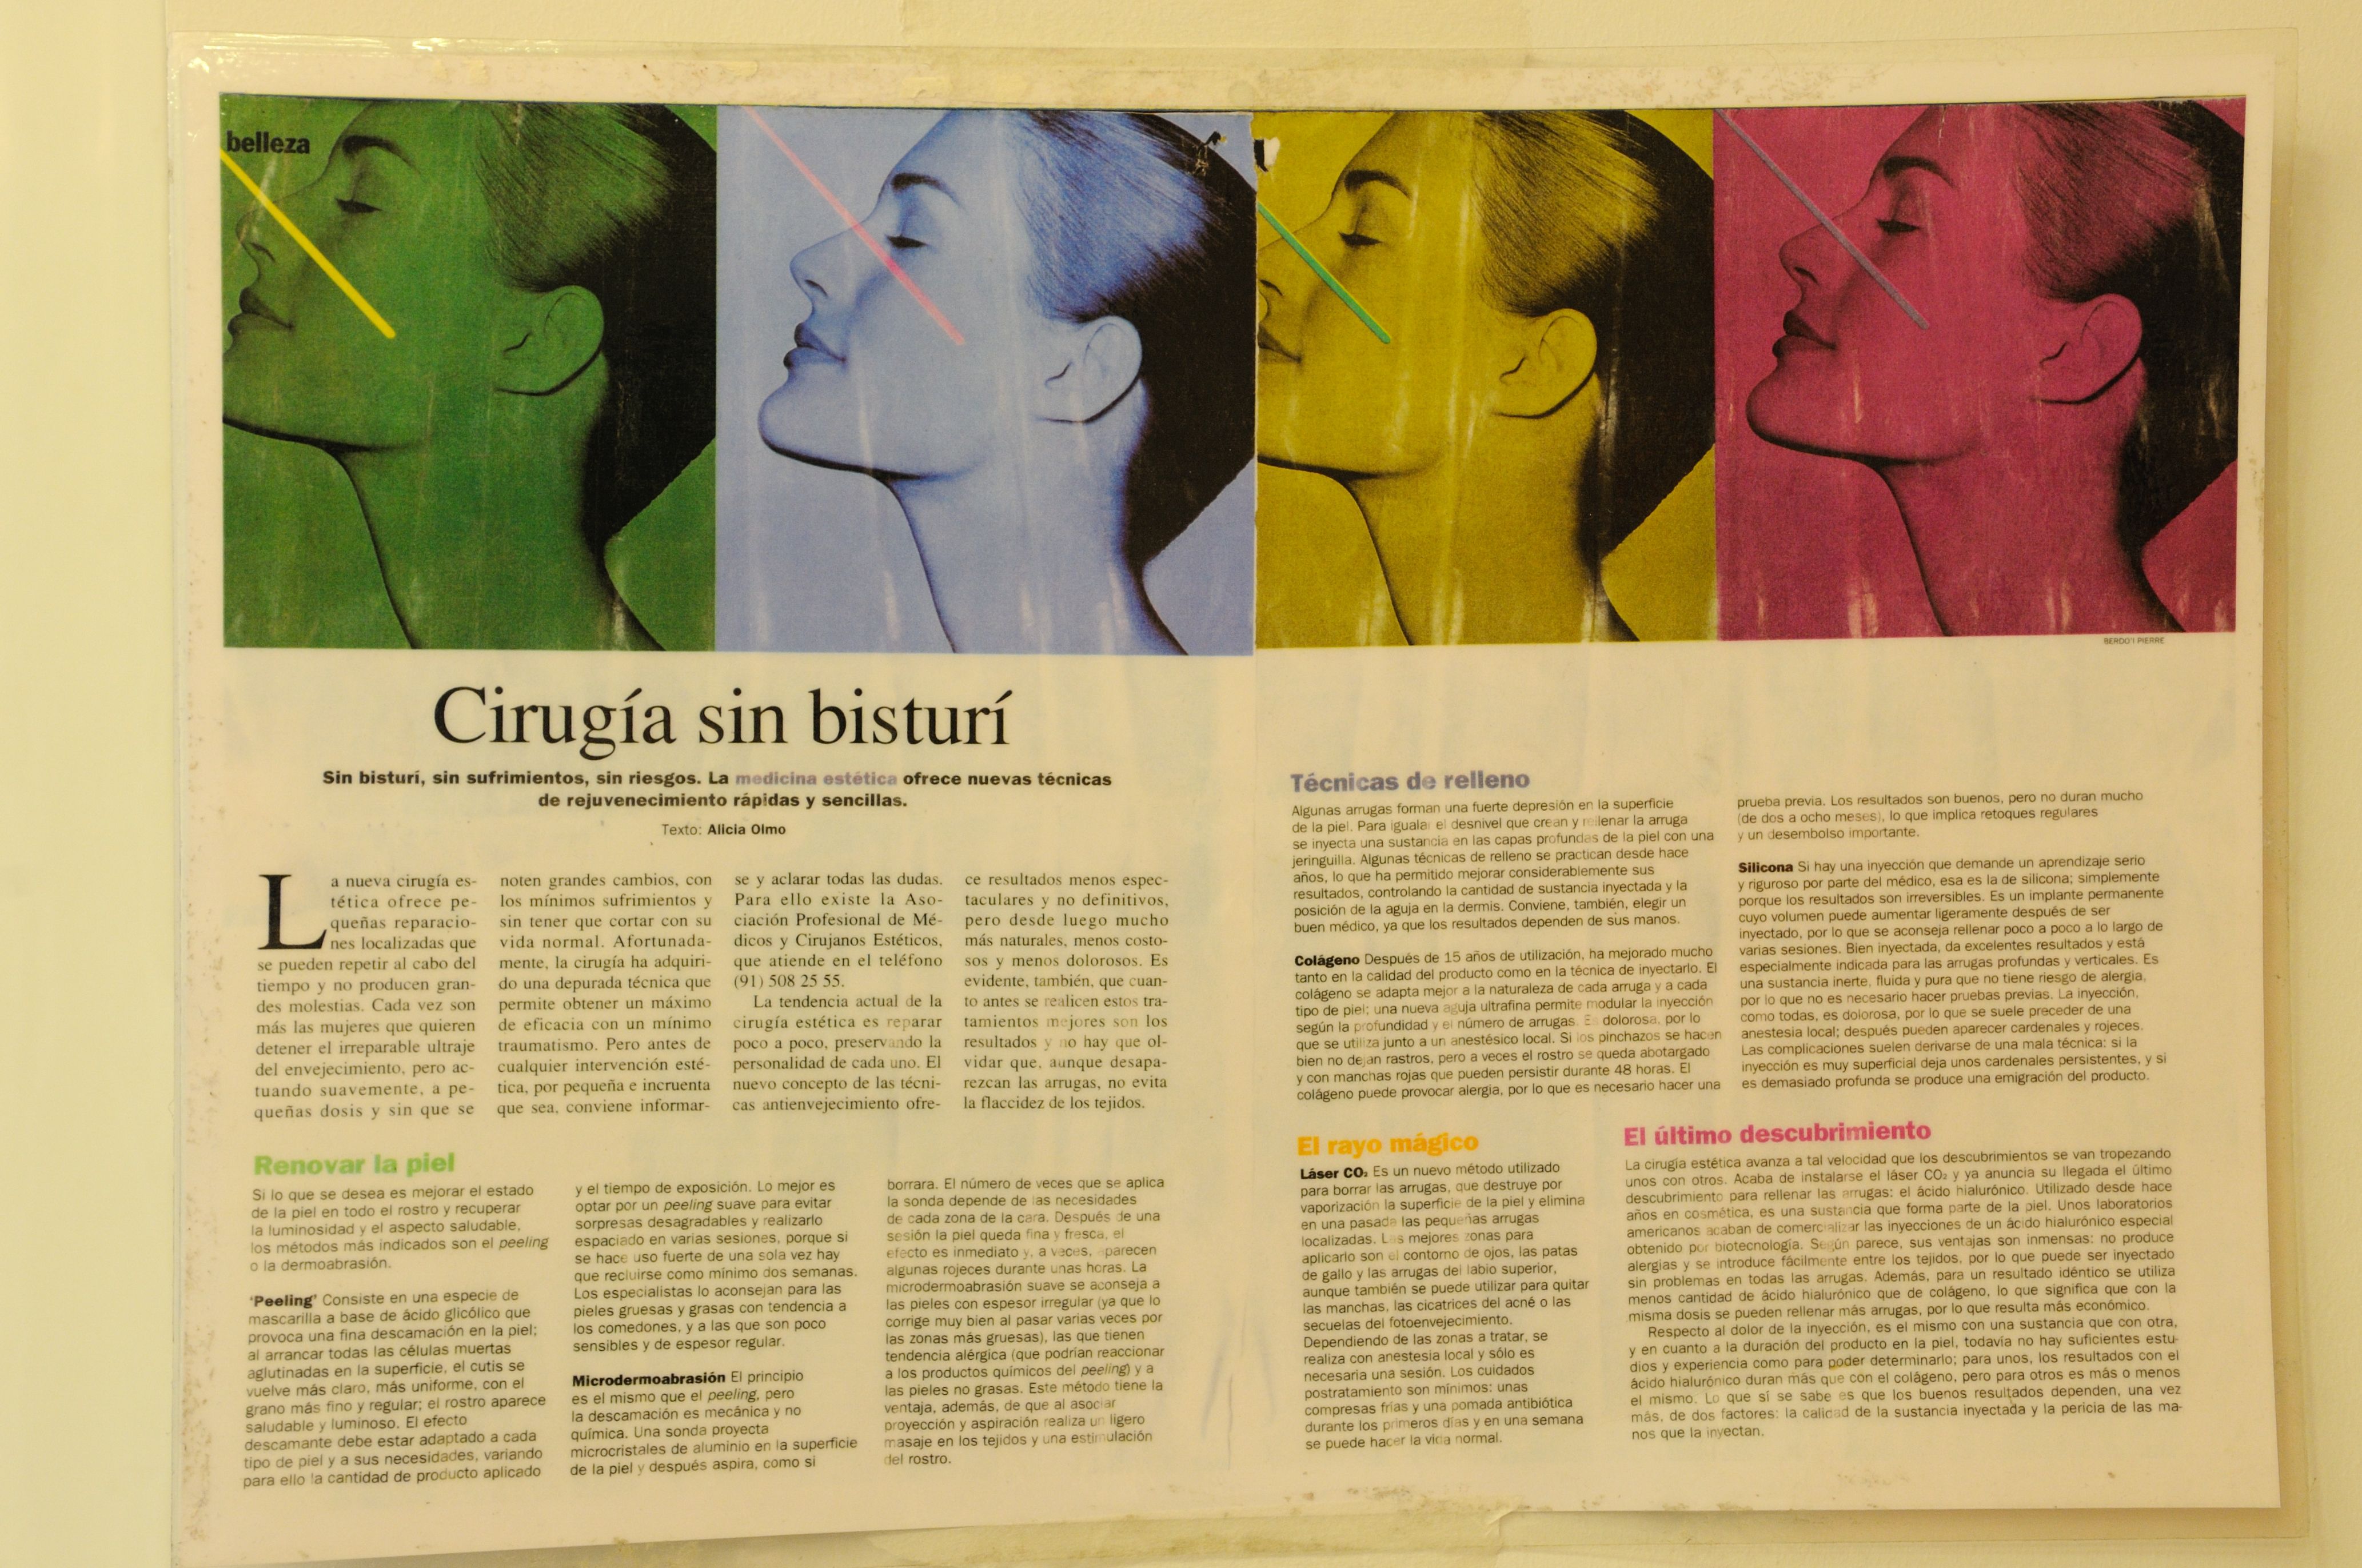 Foto 12 de Medicina estética y cosmética en San Sebastián | Dra. Ana Vilasau